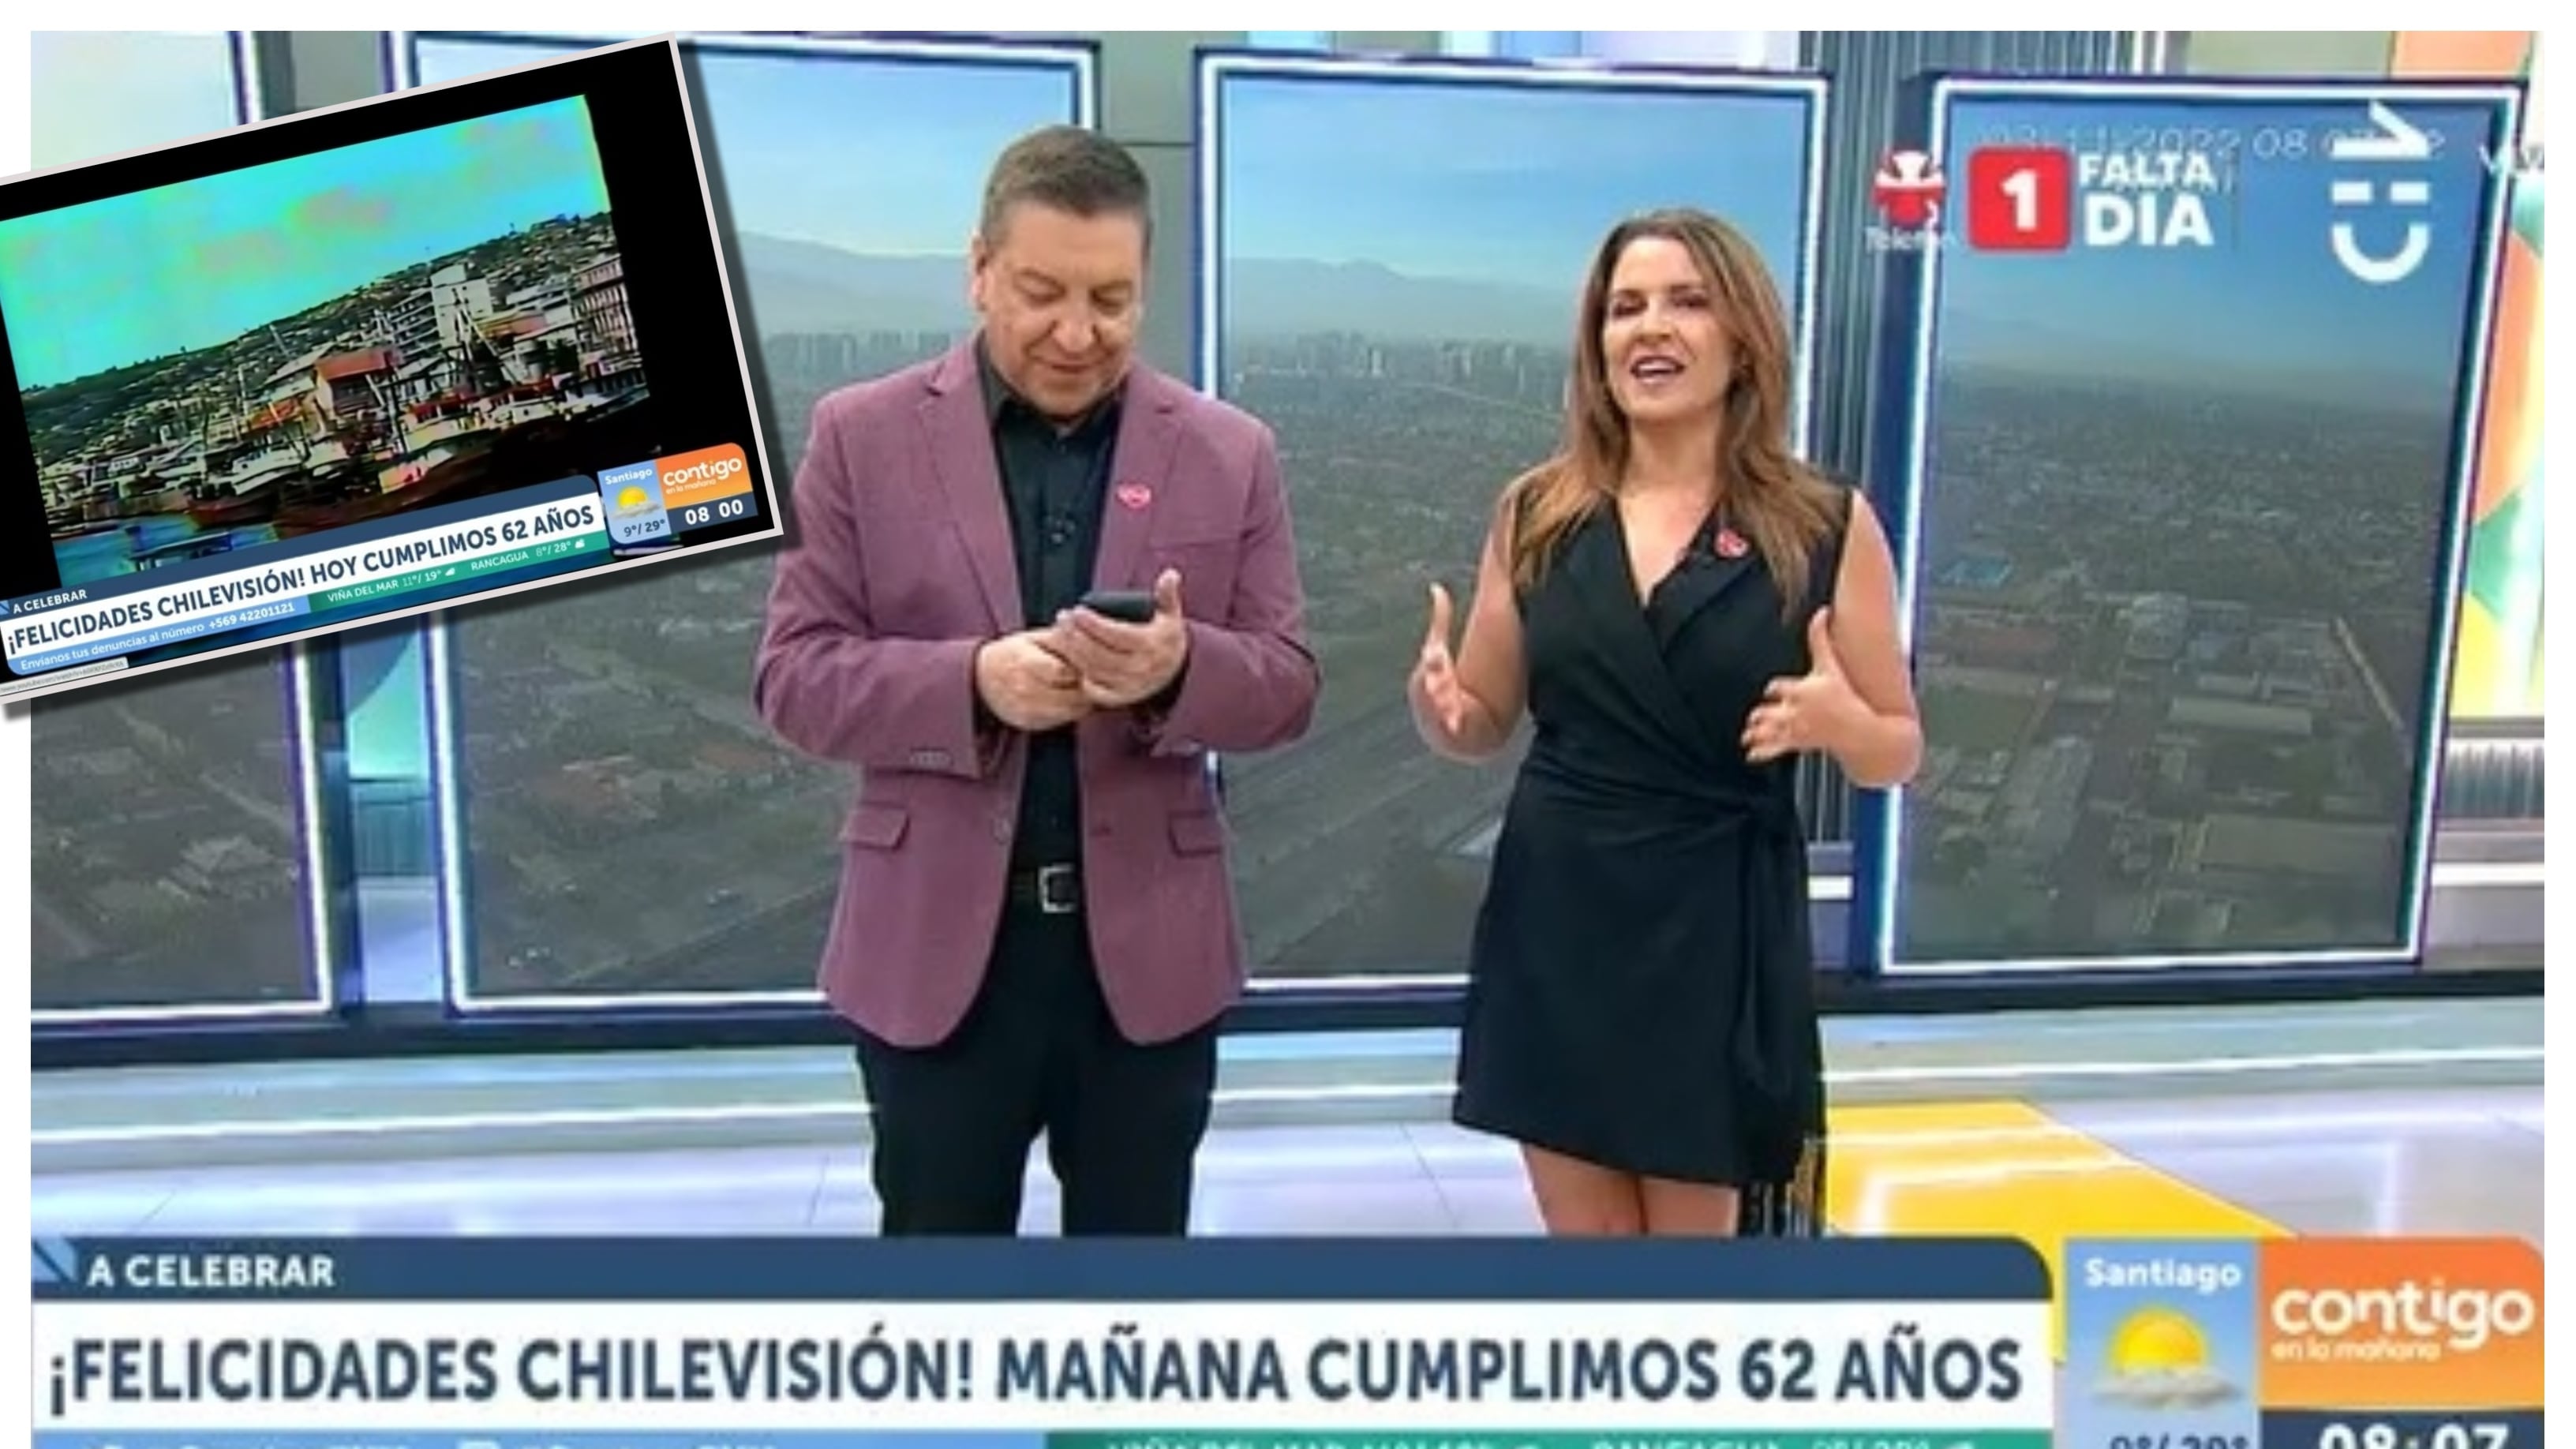 Los animadores de "Contigo en la mañana" estuvieron seis minutos celebrando erróneamente el aniversario 62 de Chilevisión, que se cumple mañana 4 de noviembre.